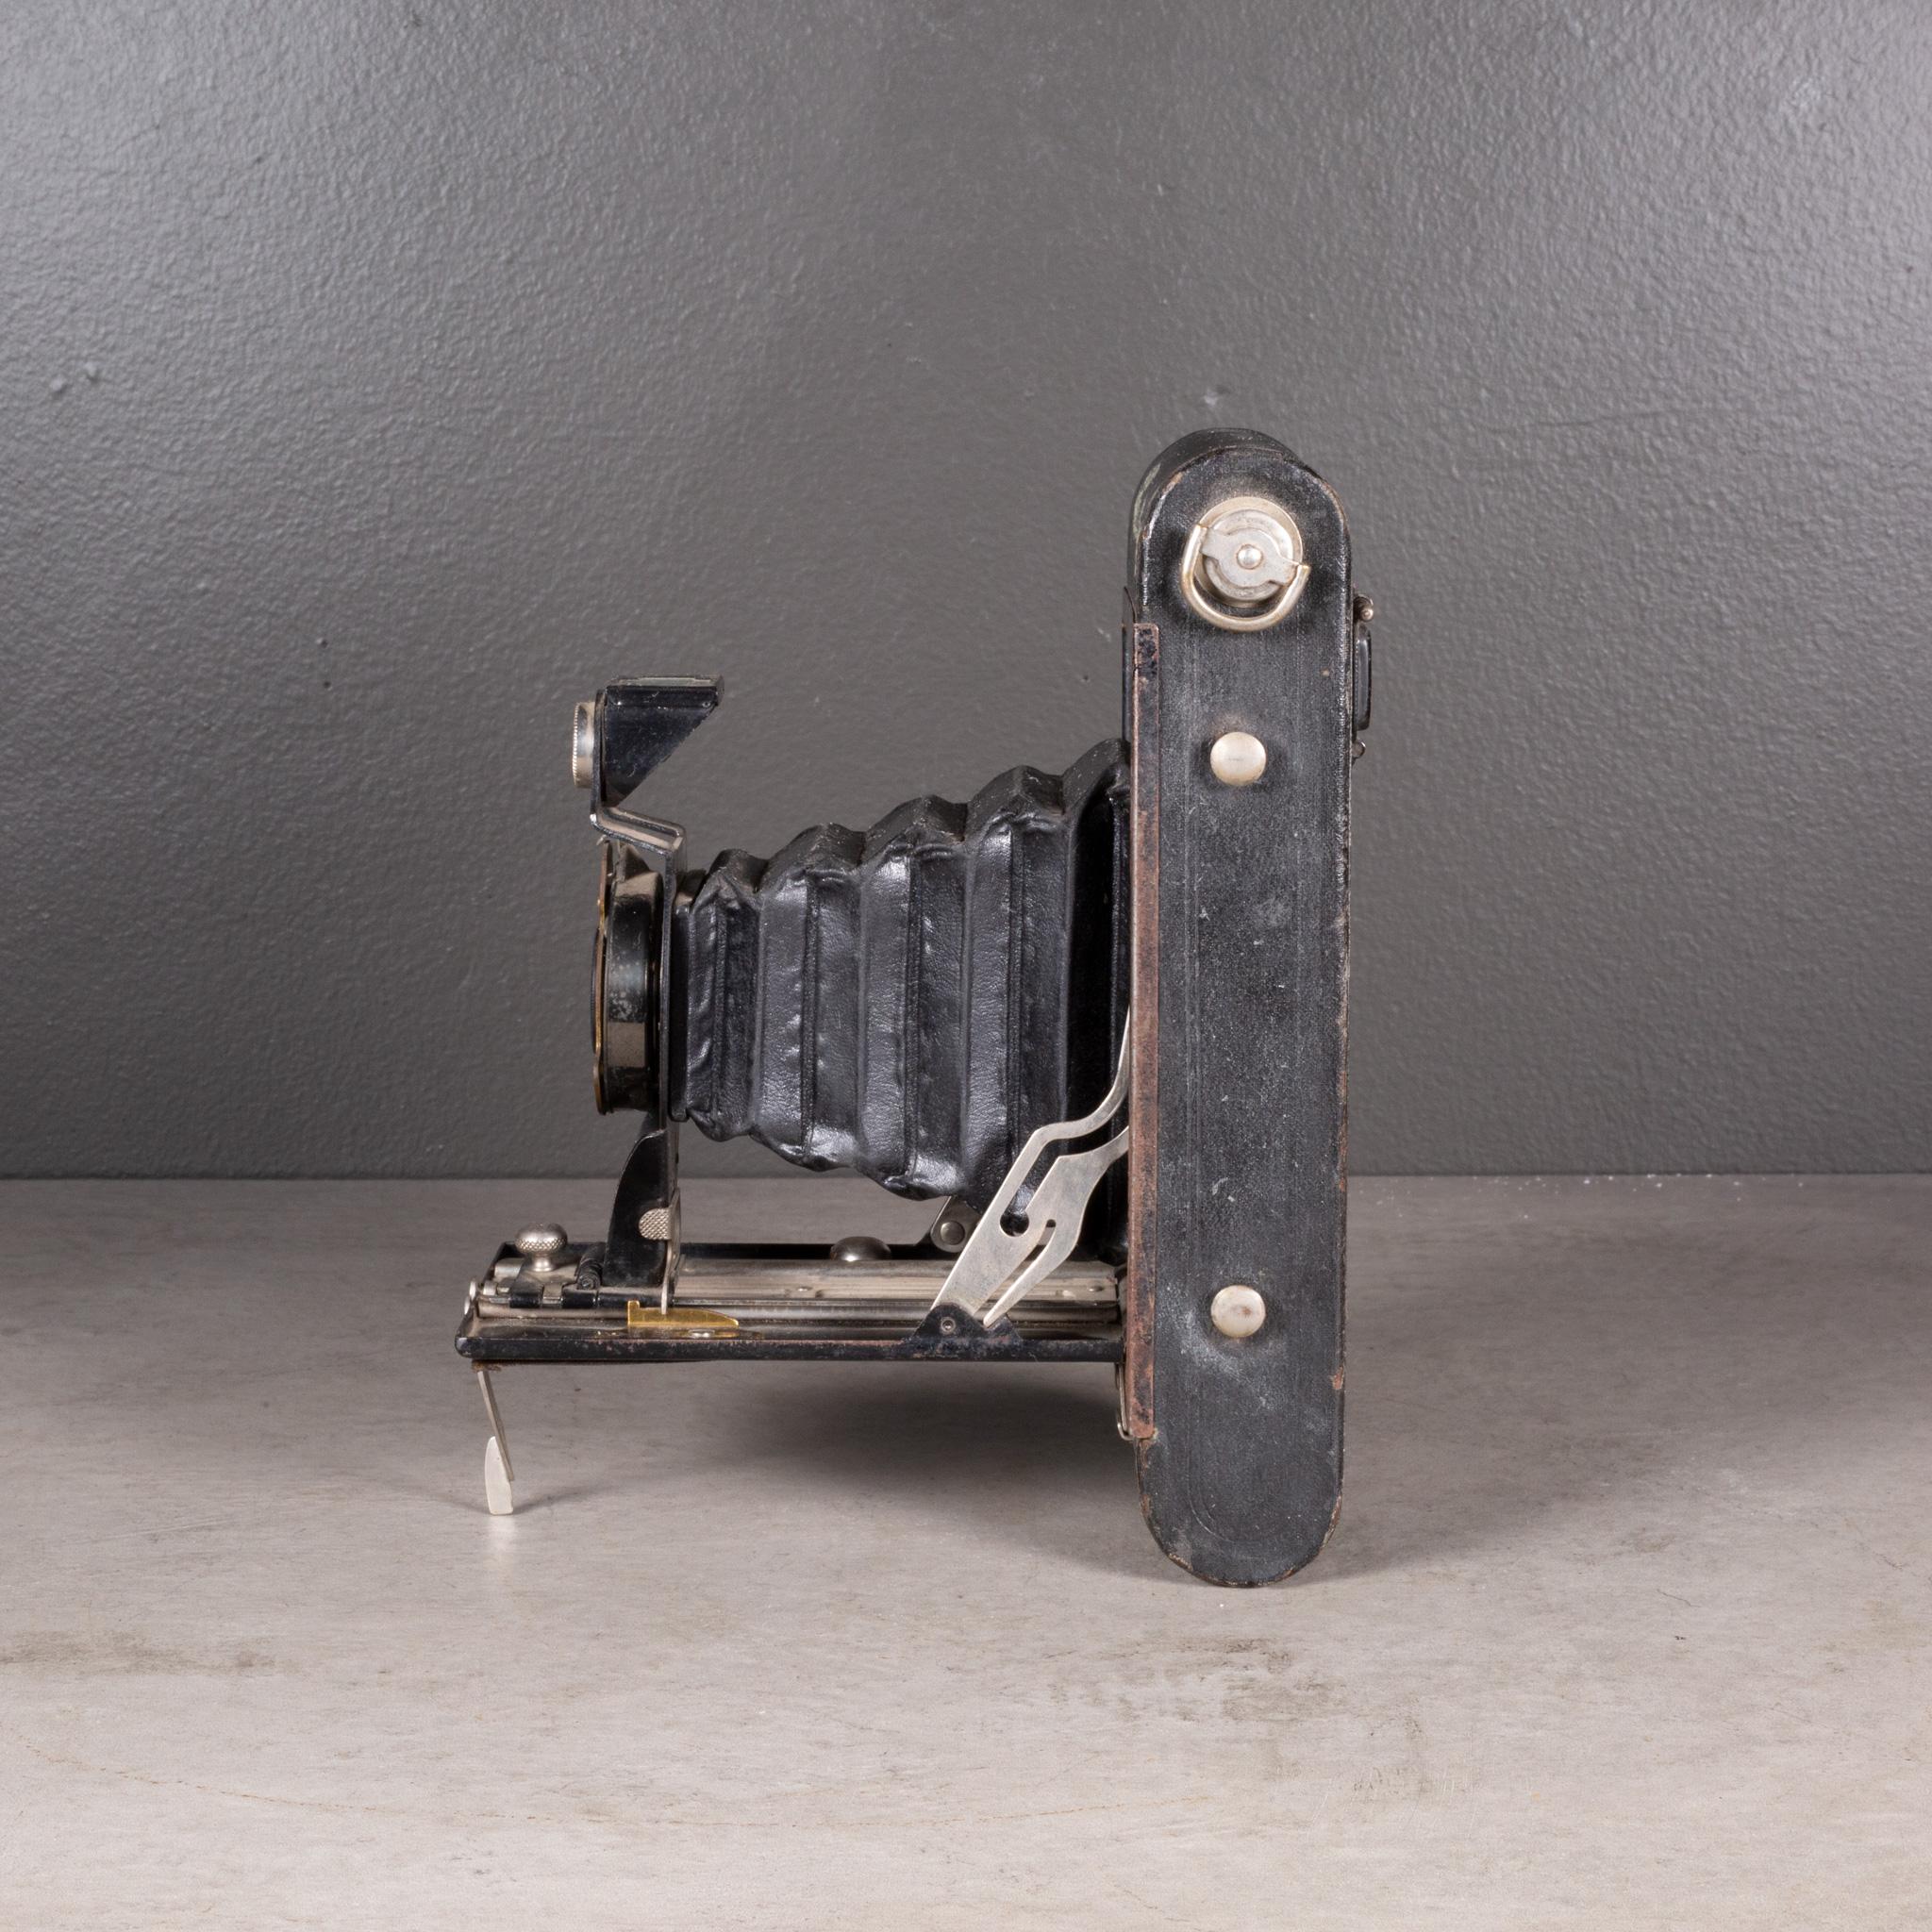 Antique Eastman Kodak 